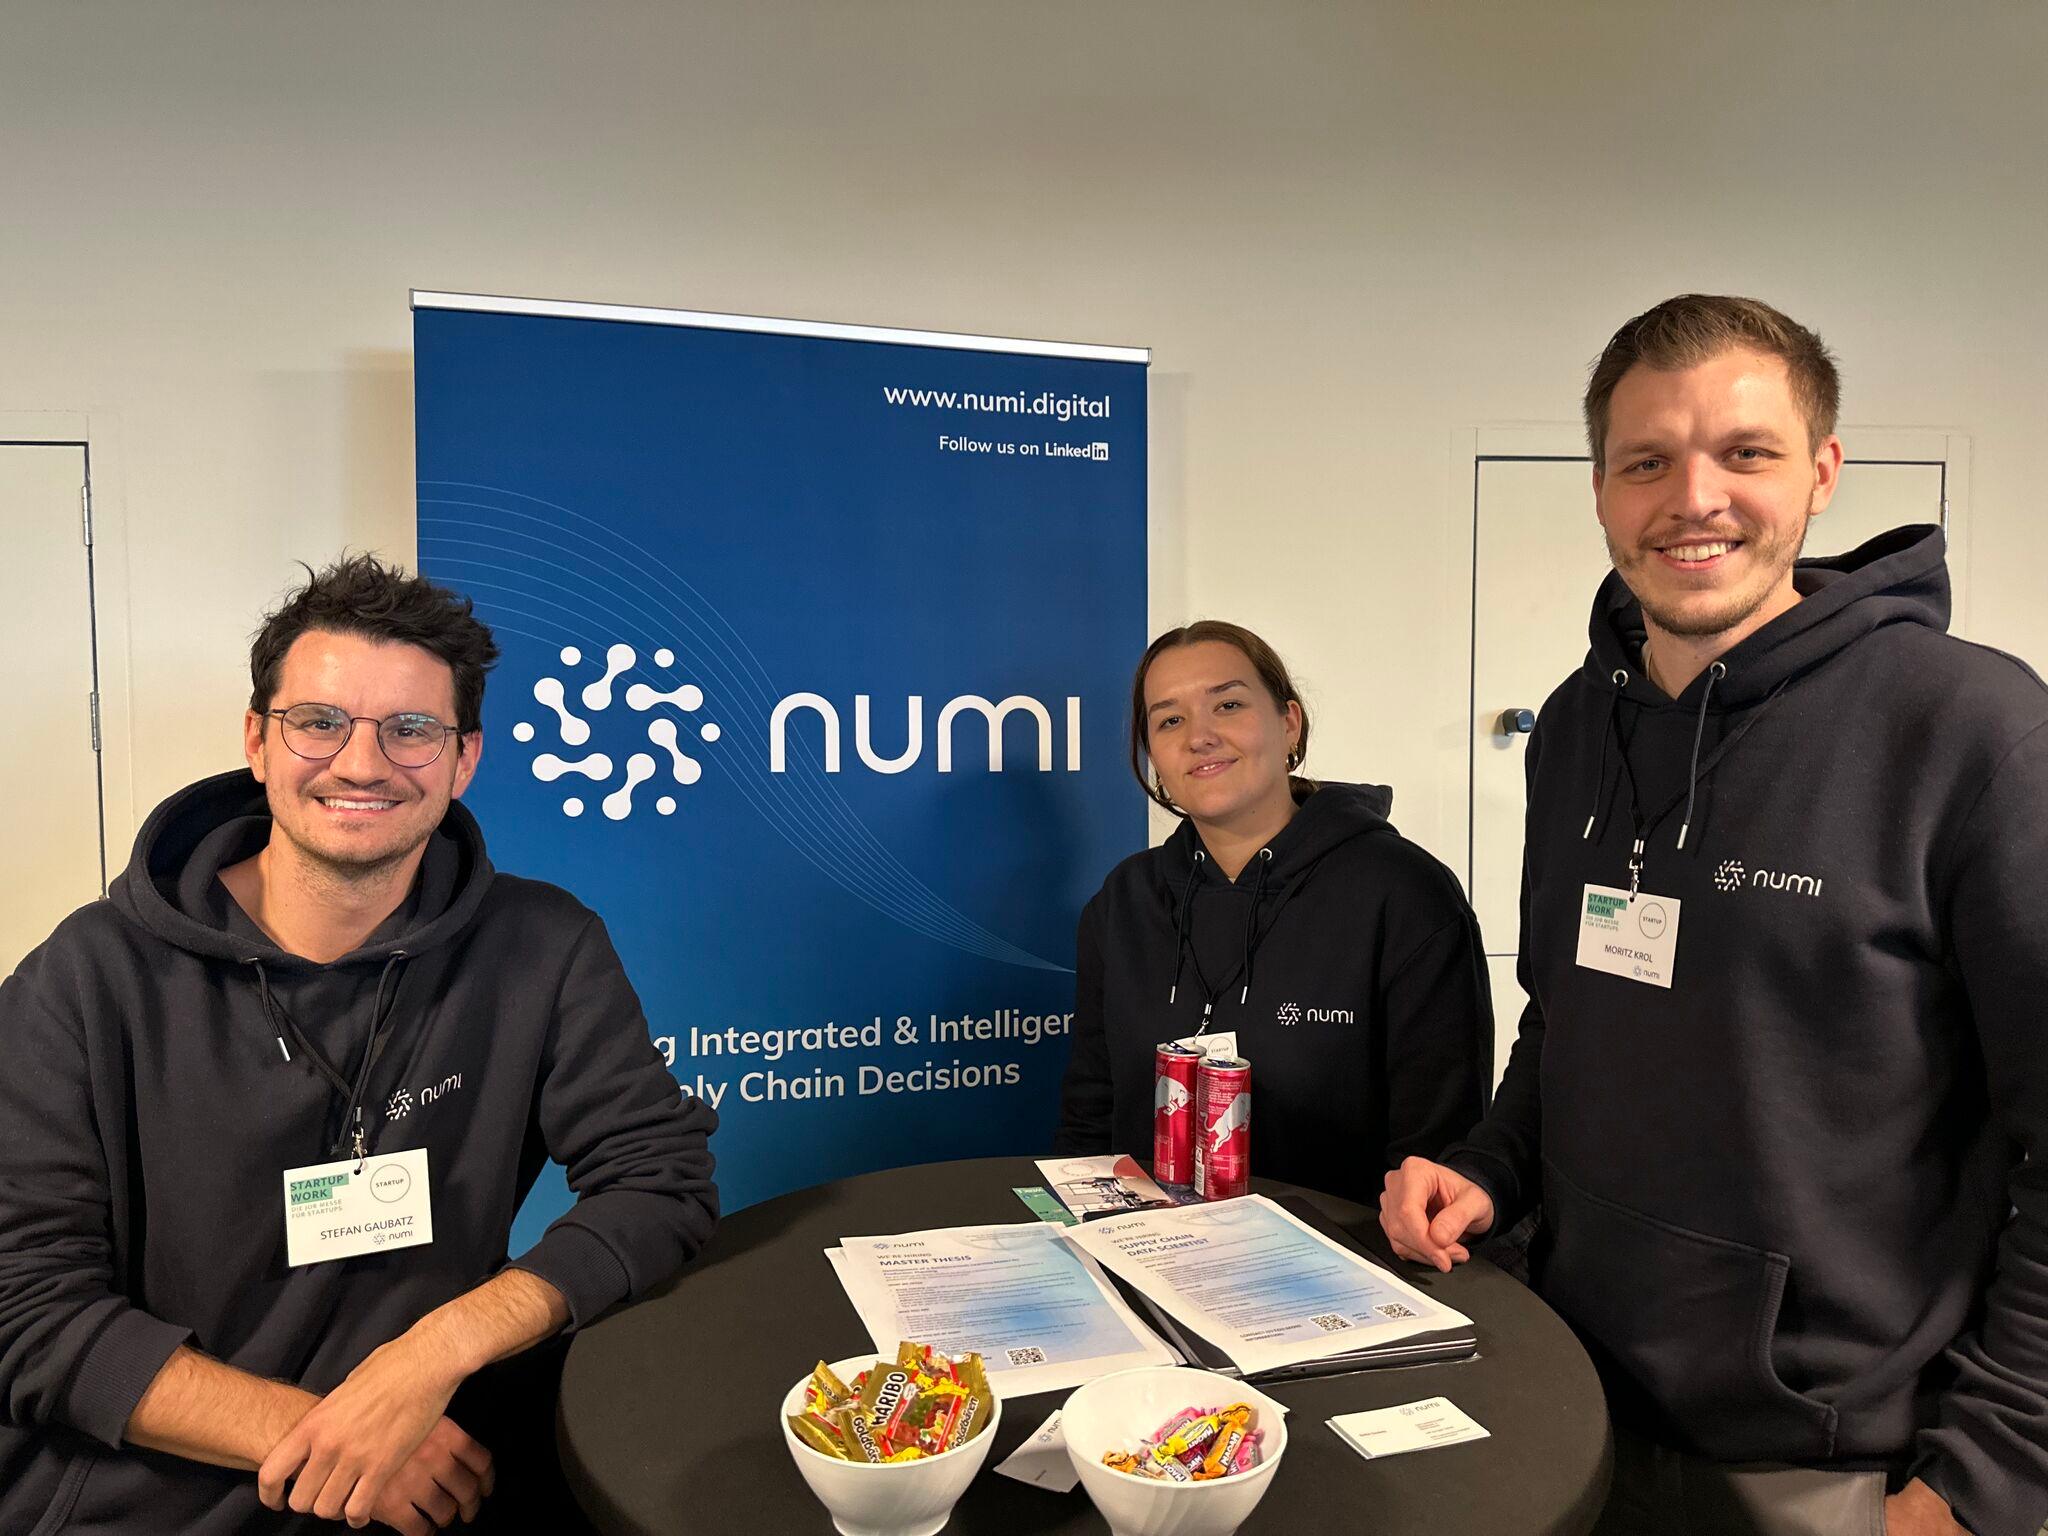 numi nimmt an der WERK1 Startup Work teil